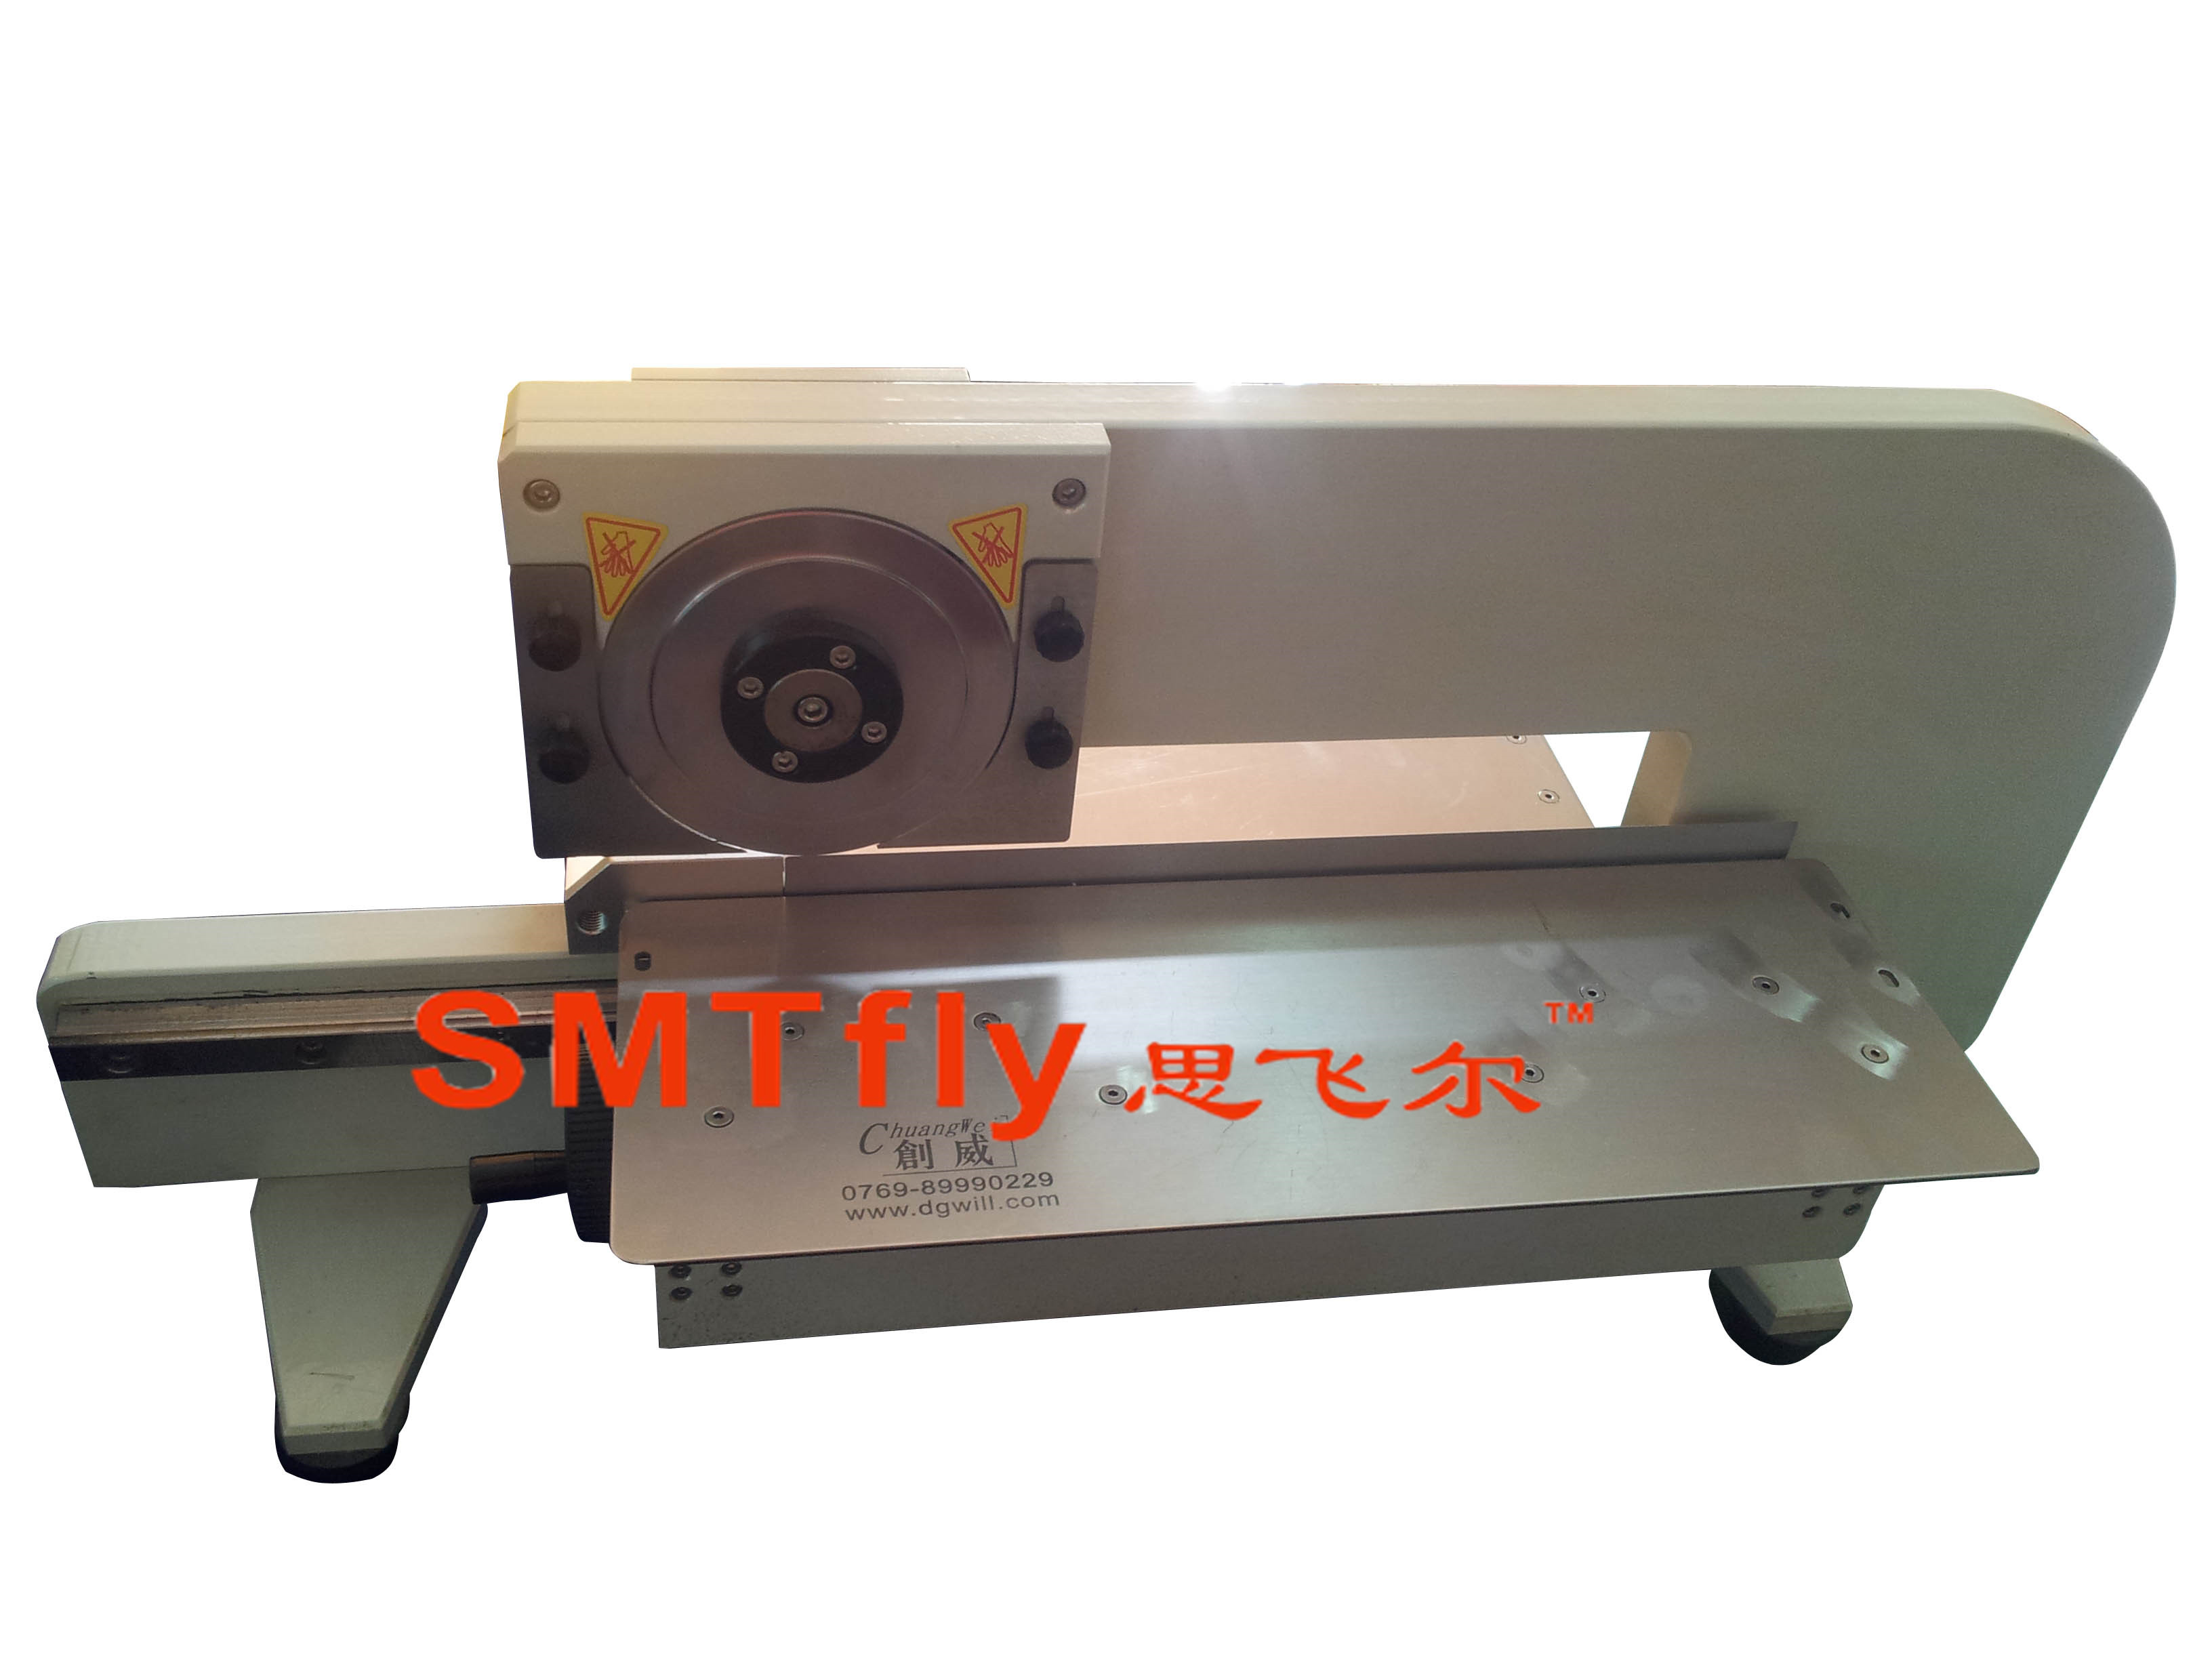 Manual PCB V-cut Machine,SMTfly-2M